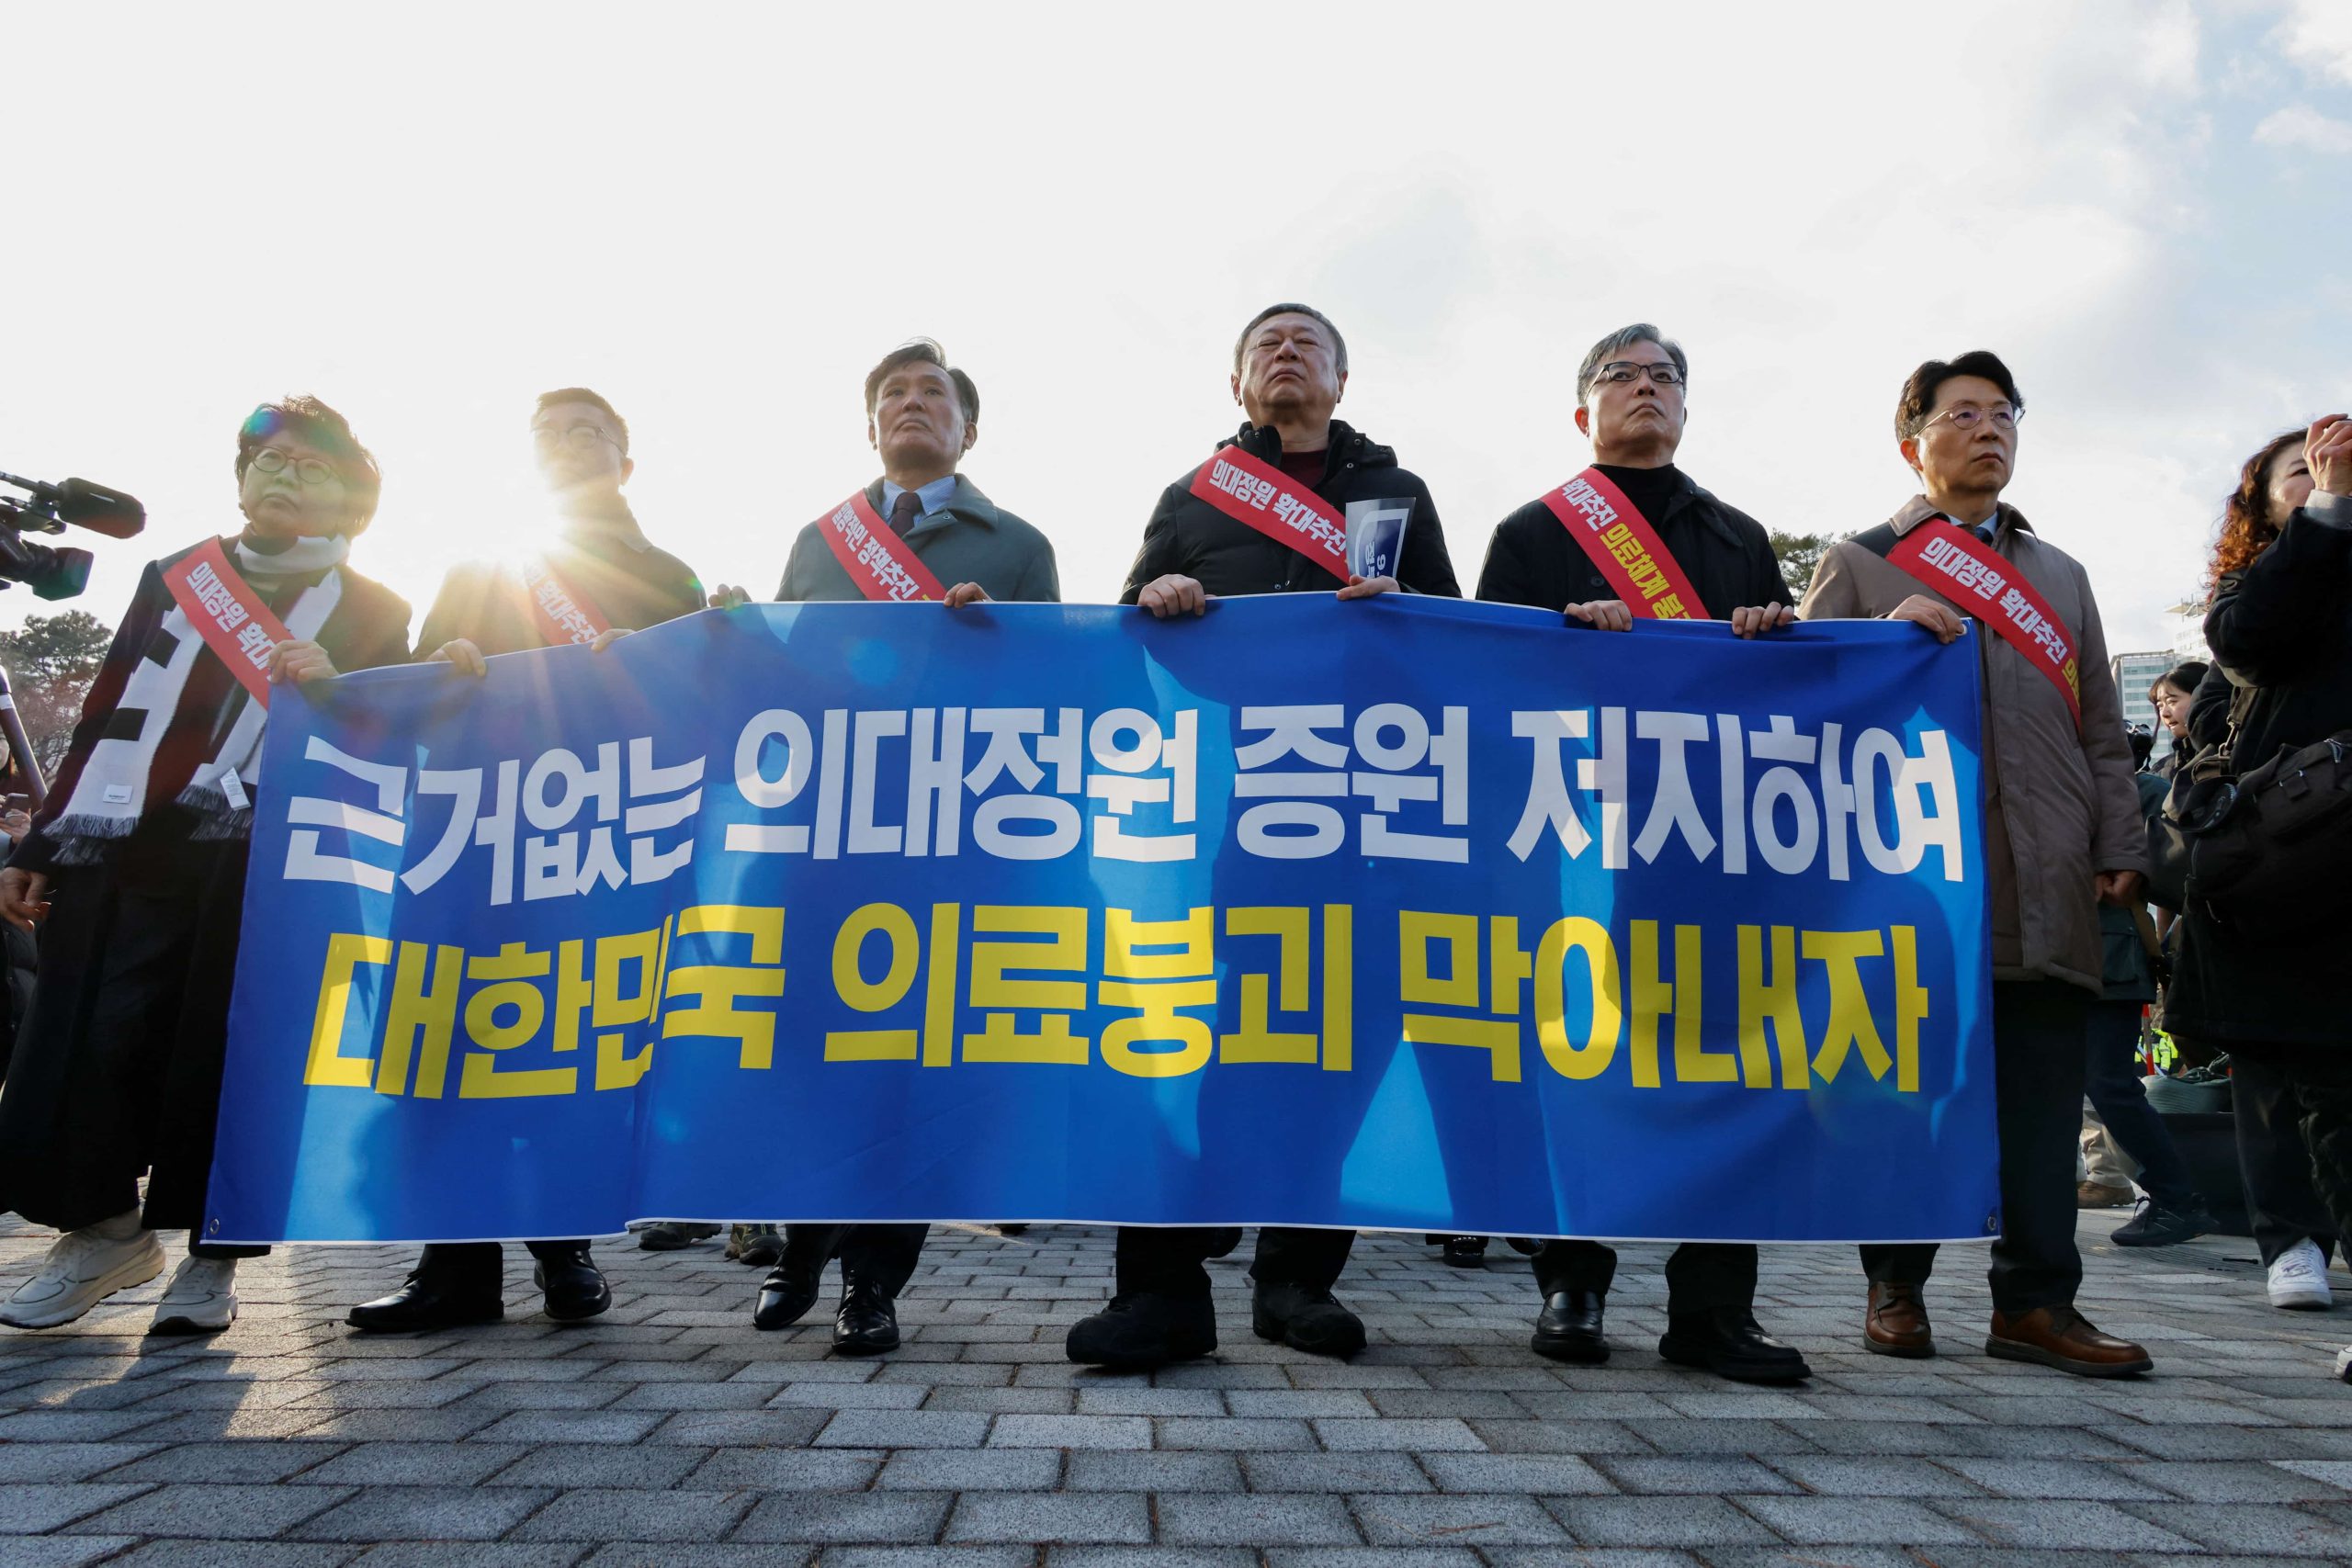 月底不复工可吊销医师执照  韩国政府最后通牒警告罢工医生  